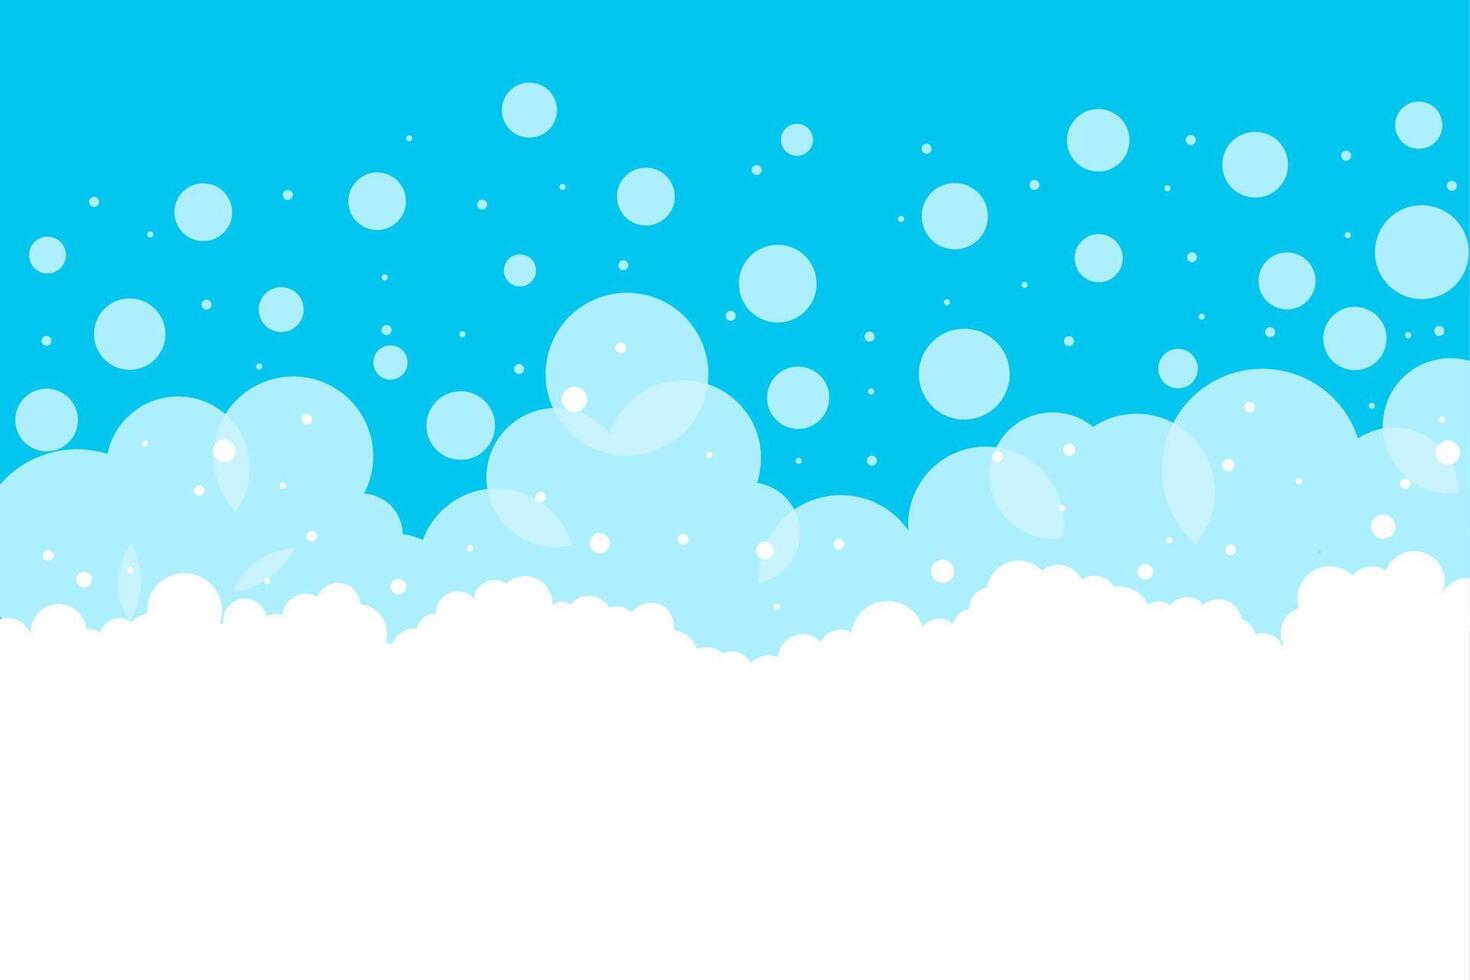 vektor illustration av tvål bubblor på en blå bakgrund. skum ikoner av olika annorlunda storlekar.